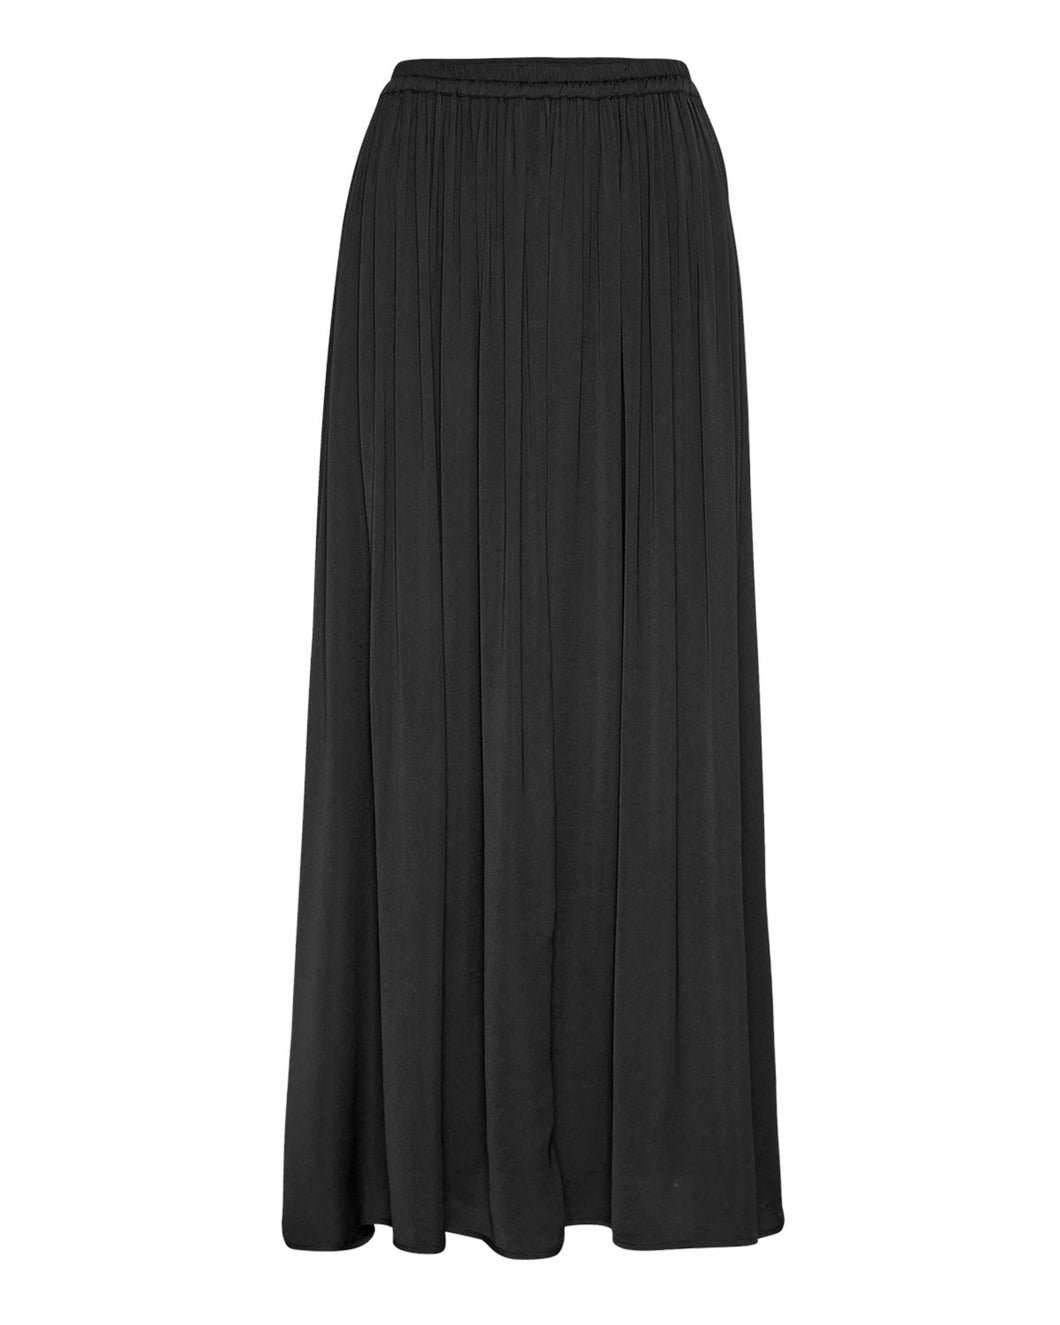 MSCHSandeline Maluca Skirt, black